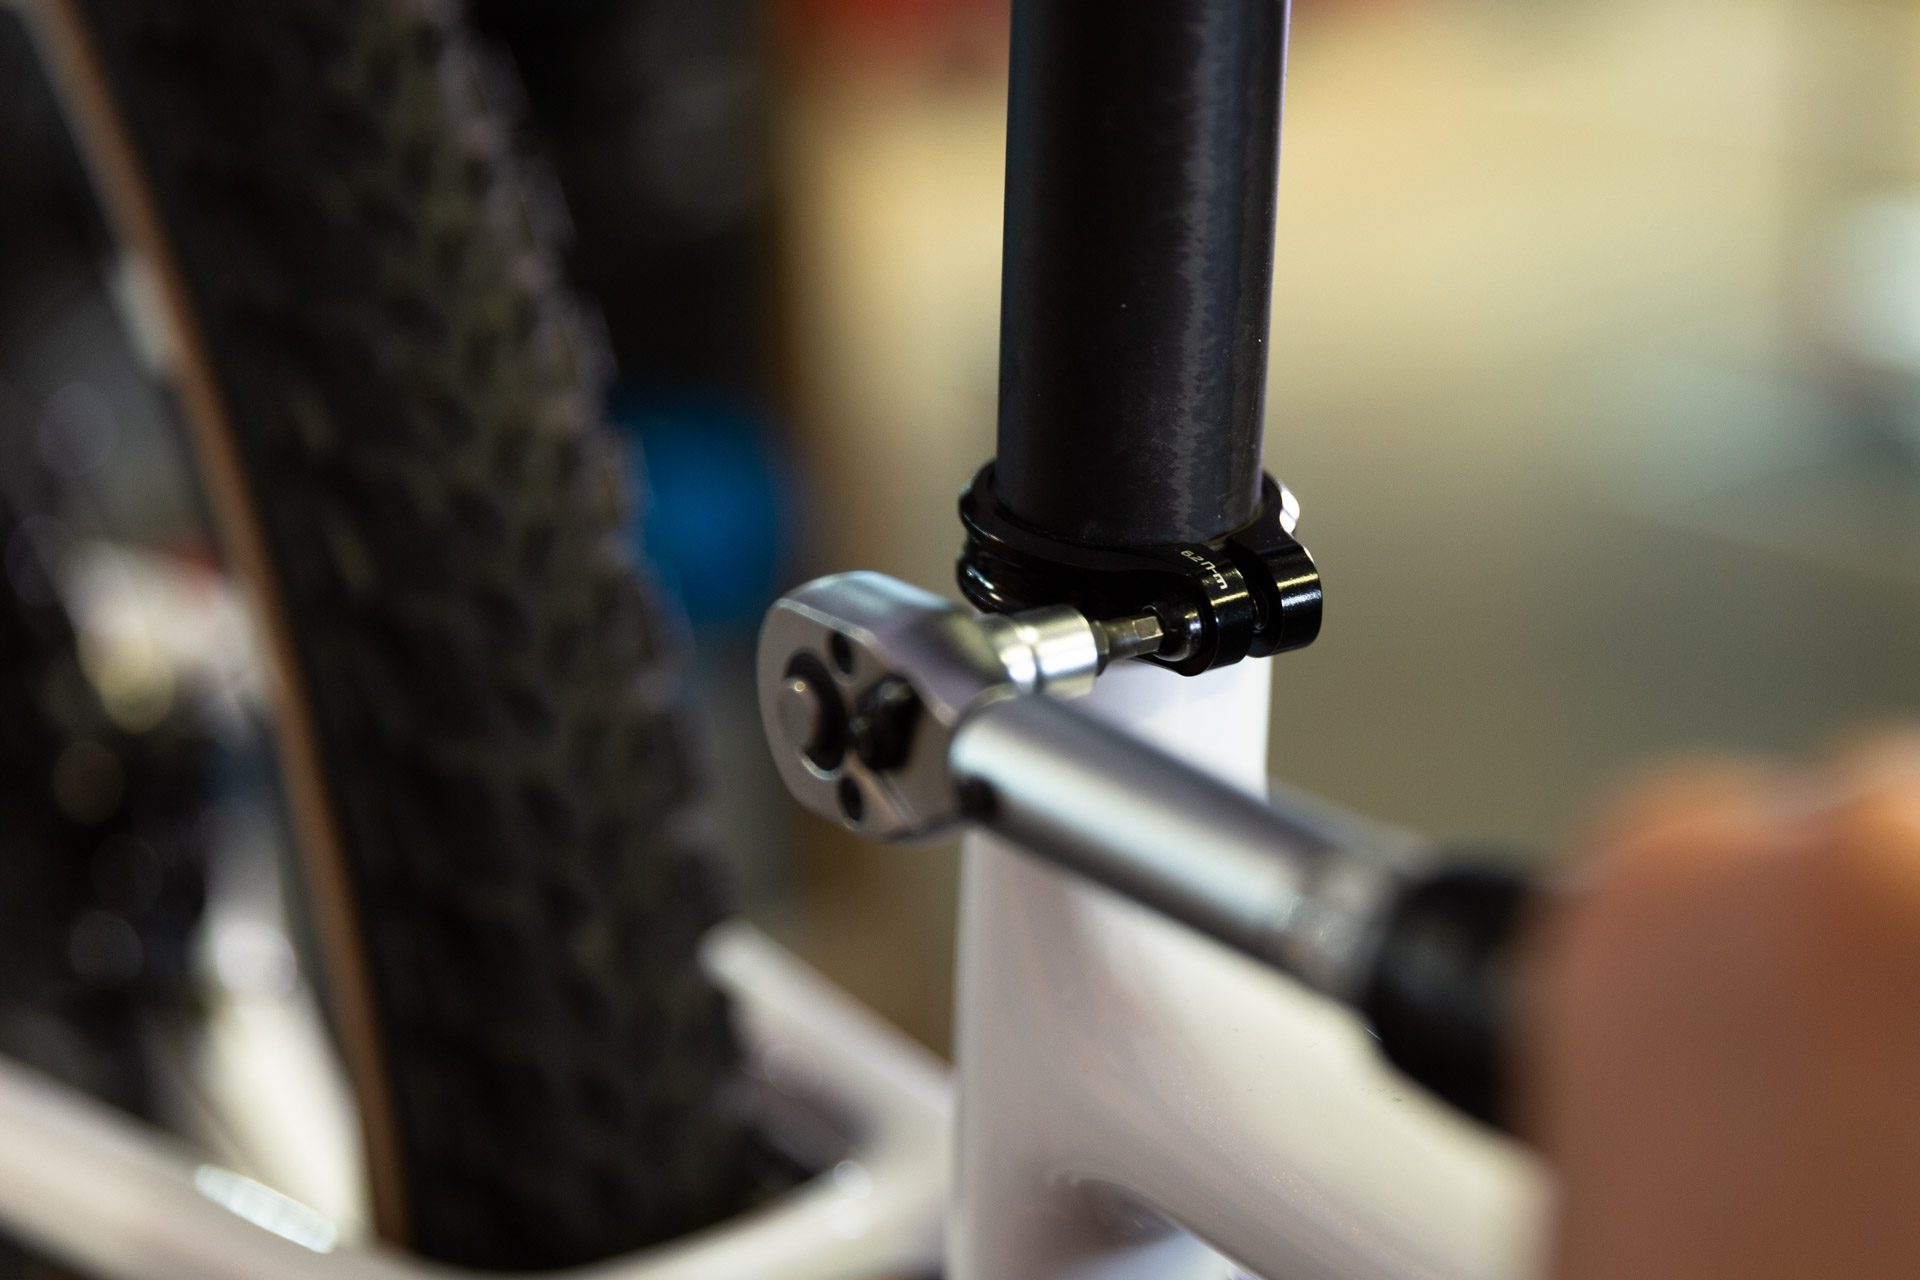 Nahaufnahme eines Drehmomentschlüssels, mit dem die Klemme einer Bike Sattelstütze angezogen wird.